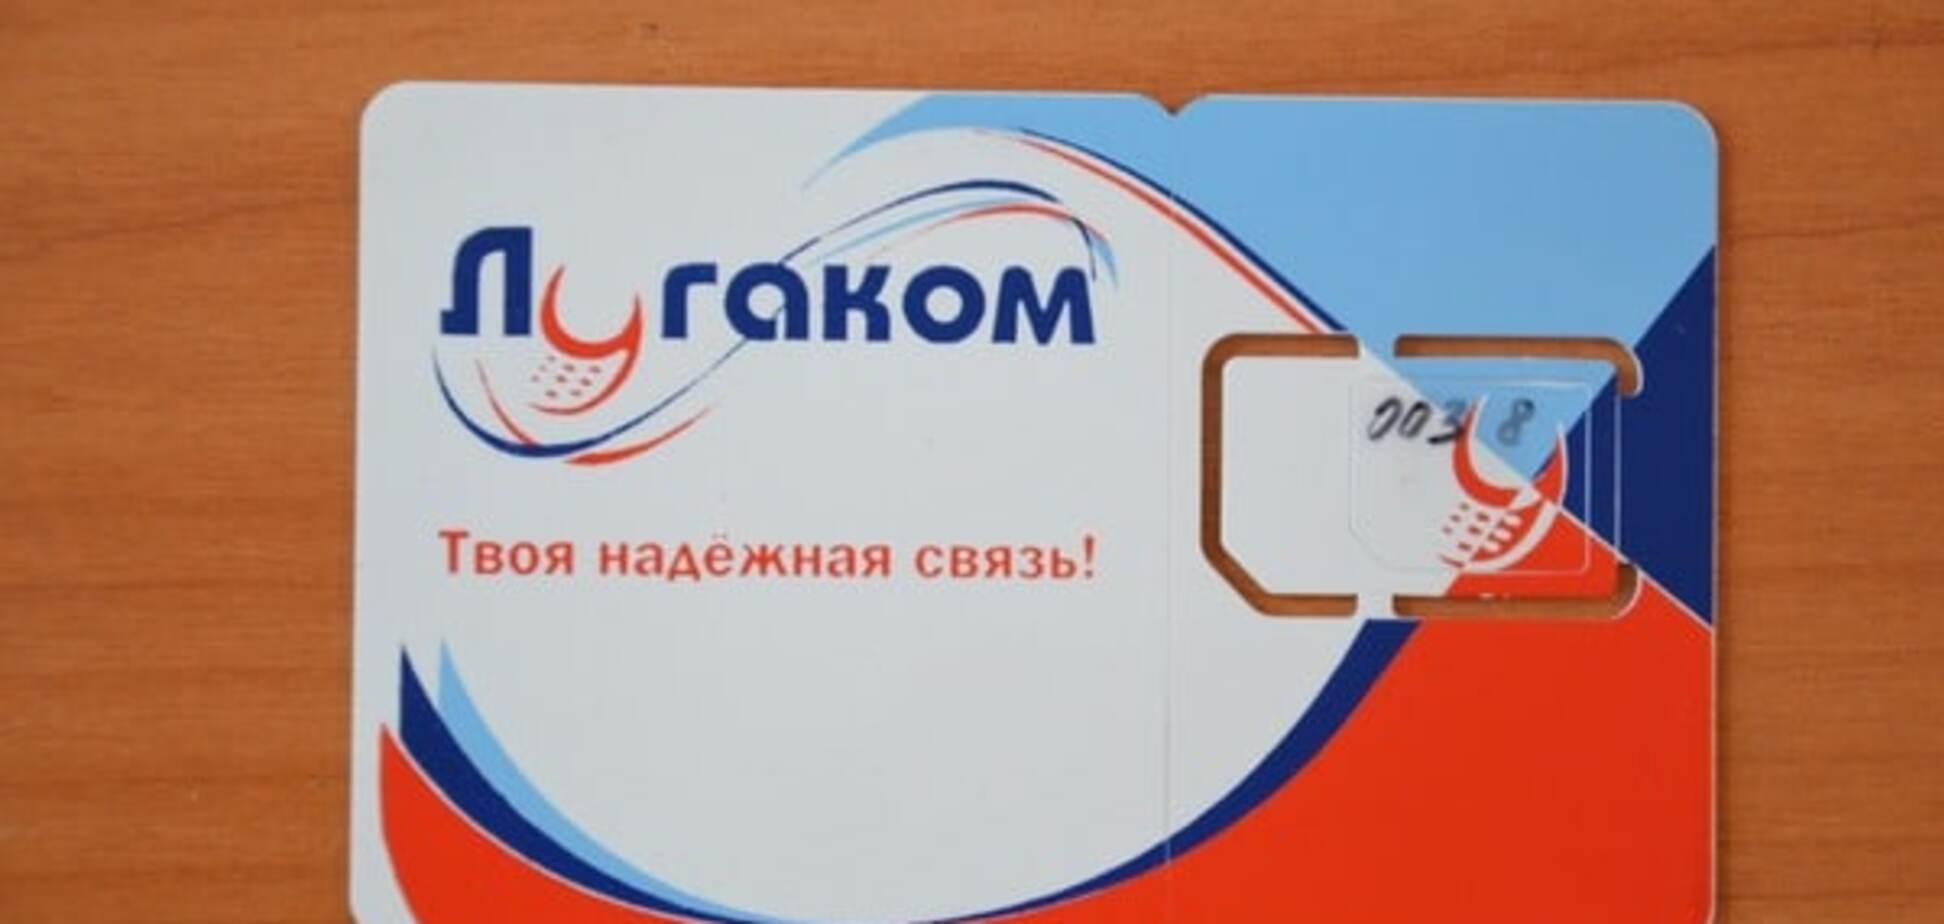 Телефонуйте у дзвін: українським мобільним операторам заборонили приймати дзвінки 'Лугакома'